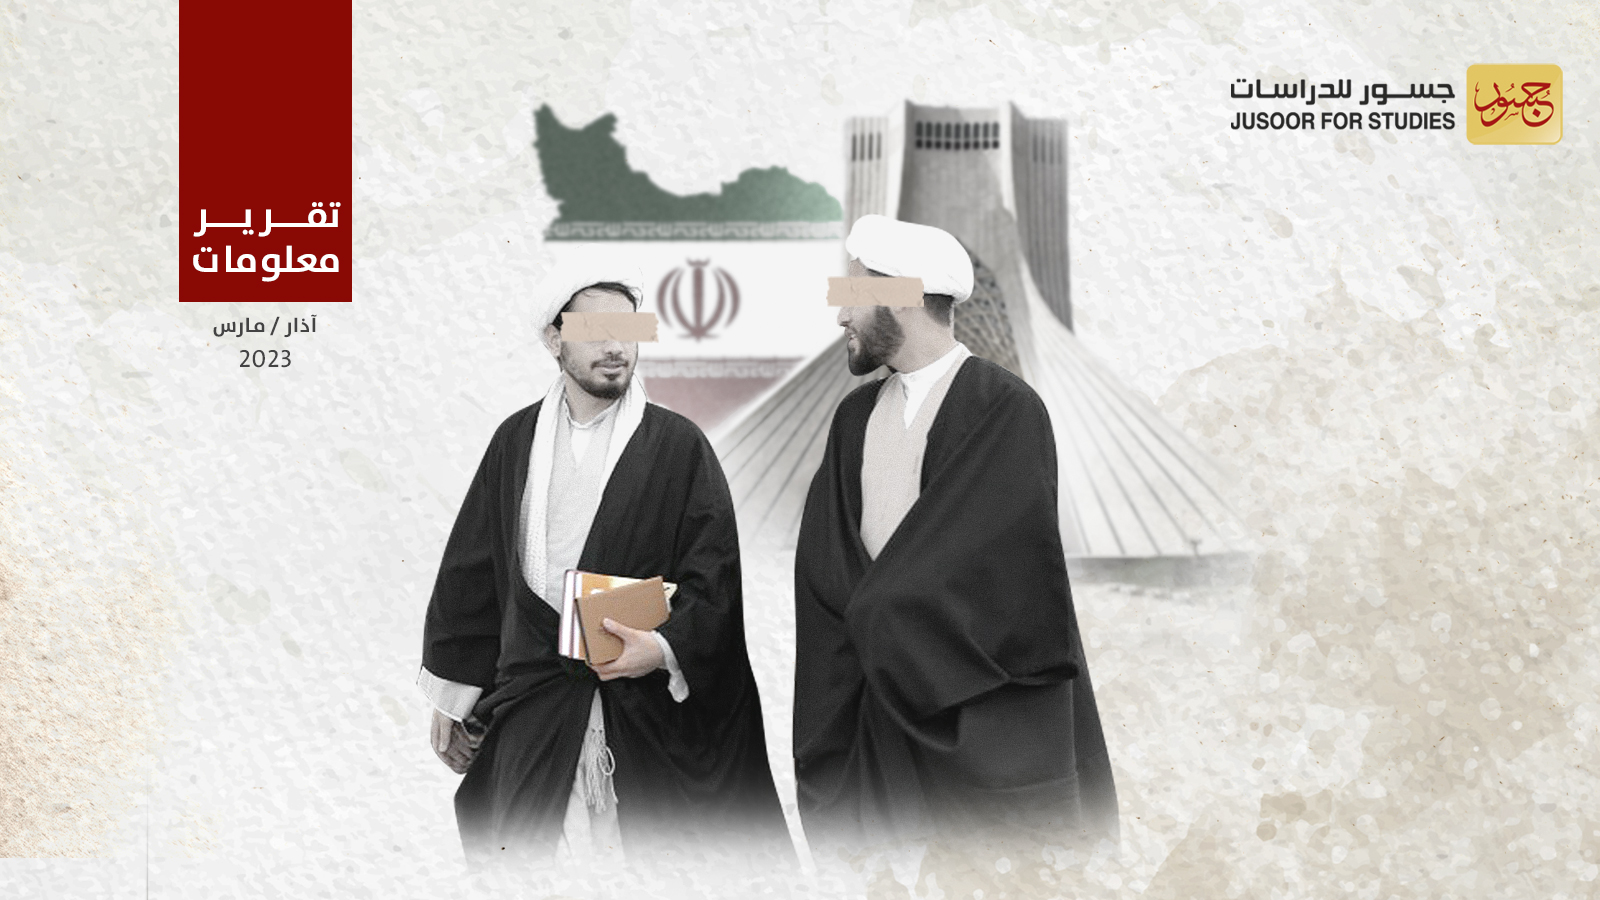 دورة شرعية في إيران لشيعة من محافظة درعا